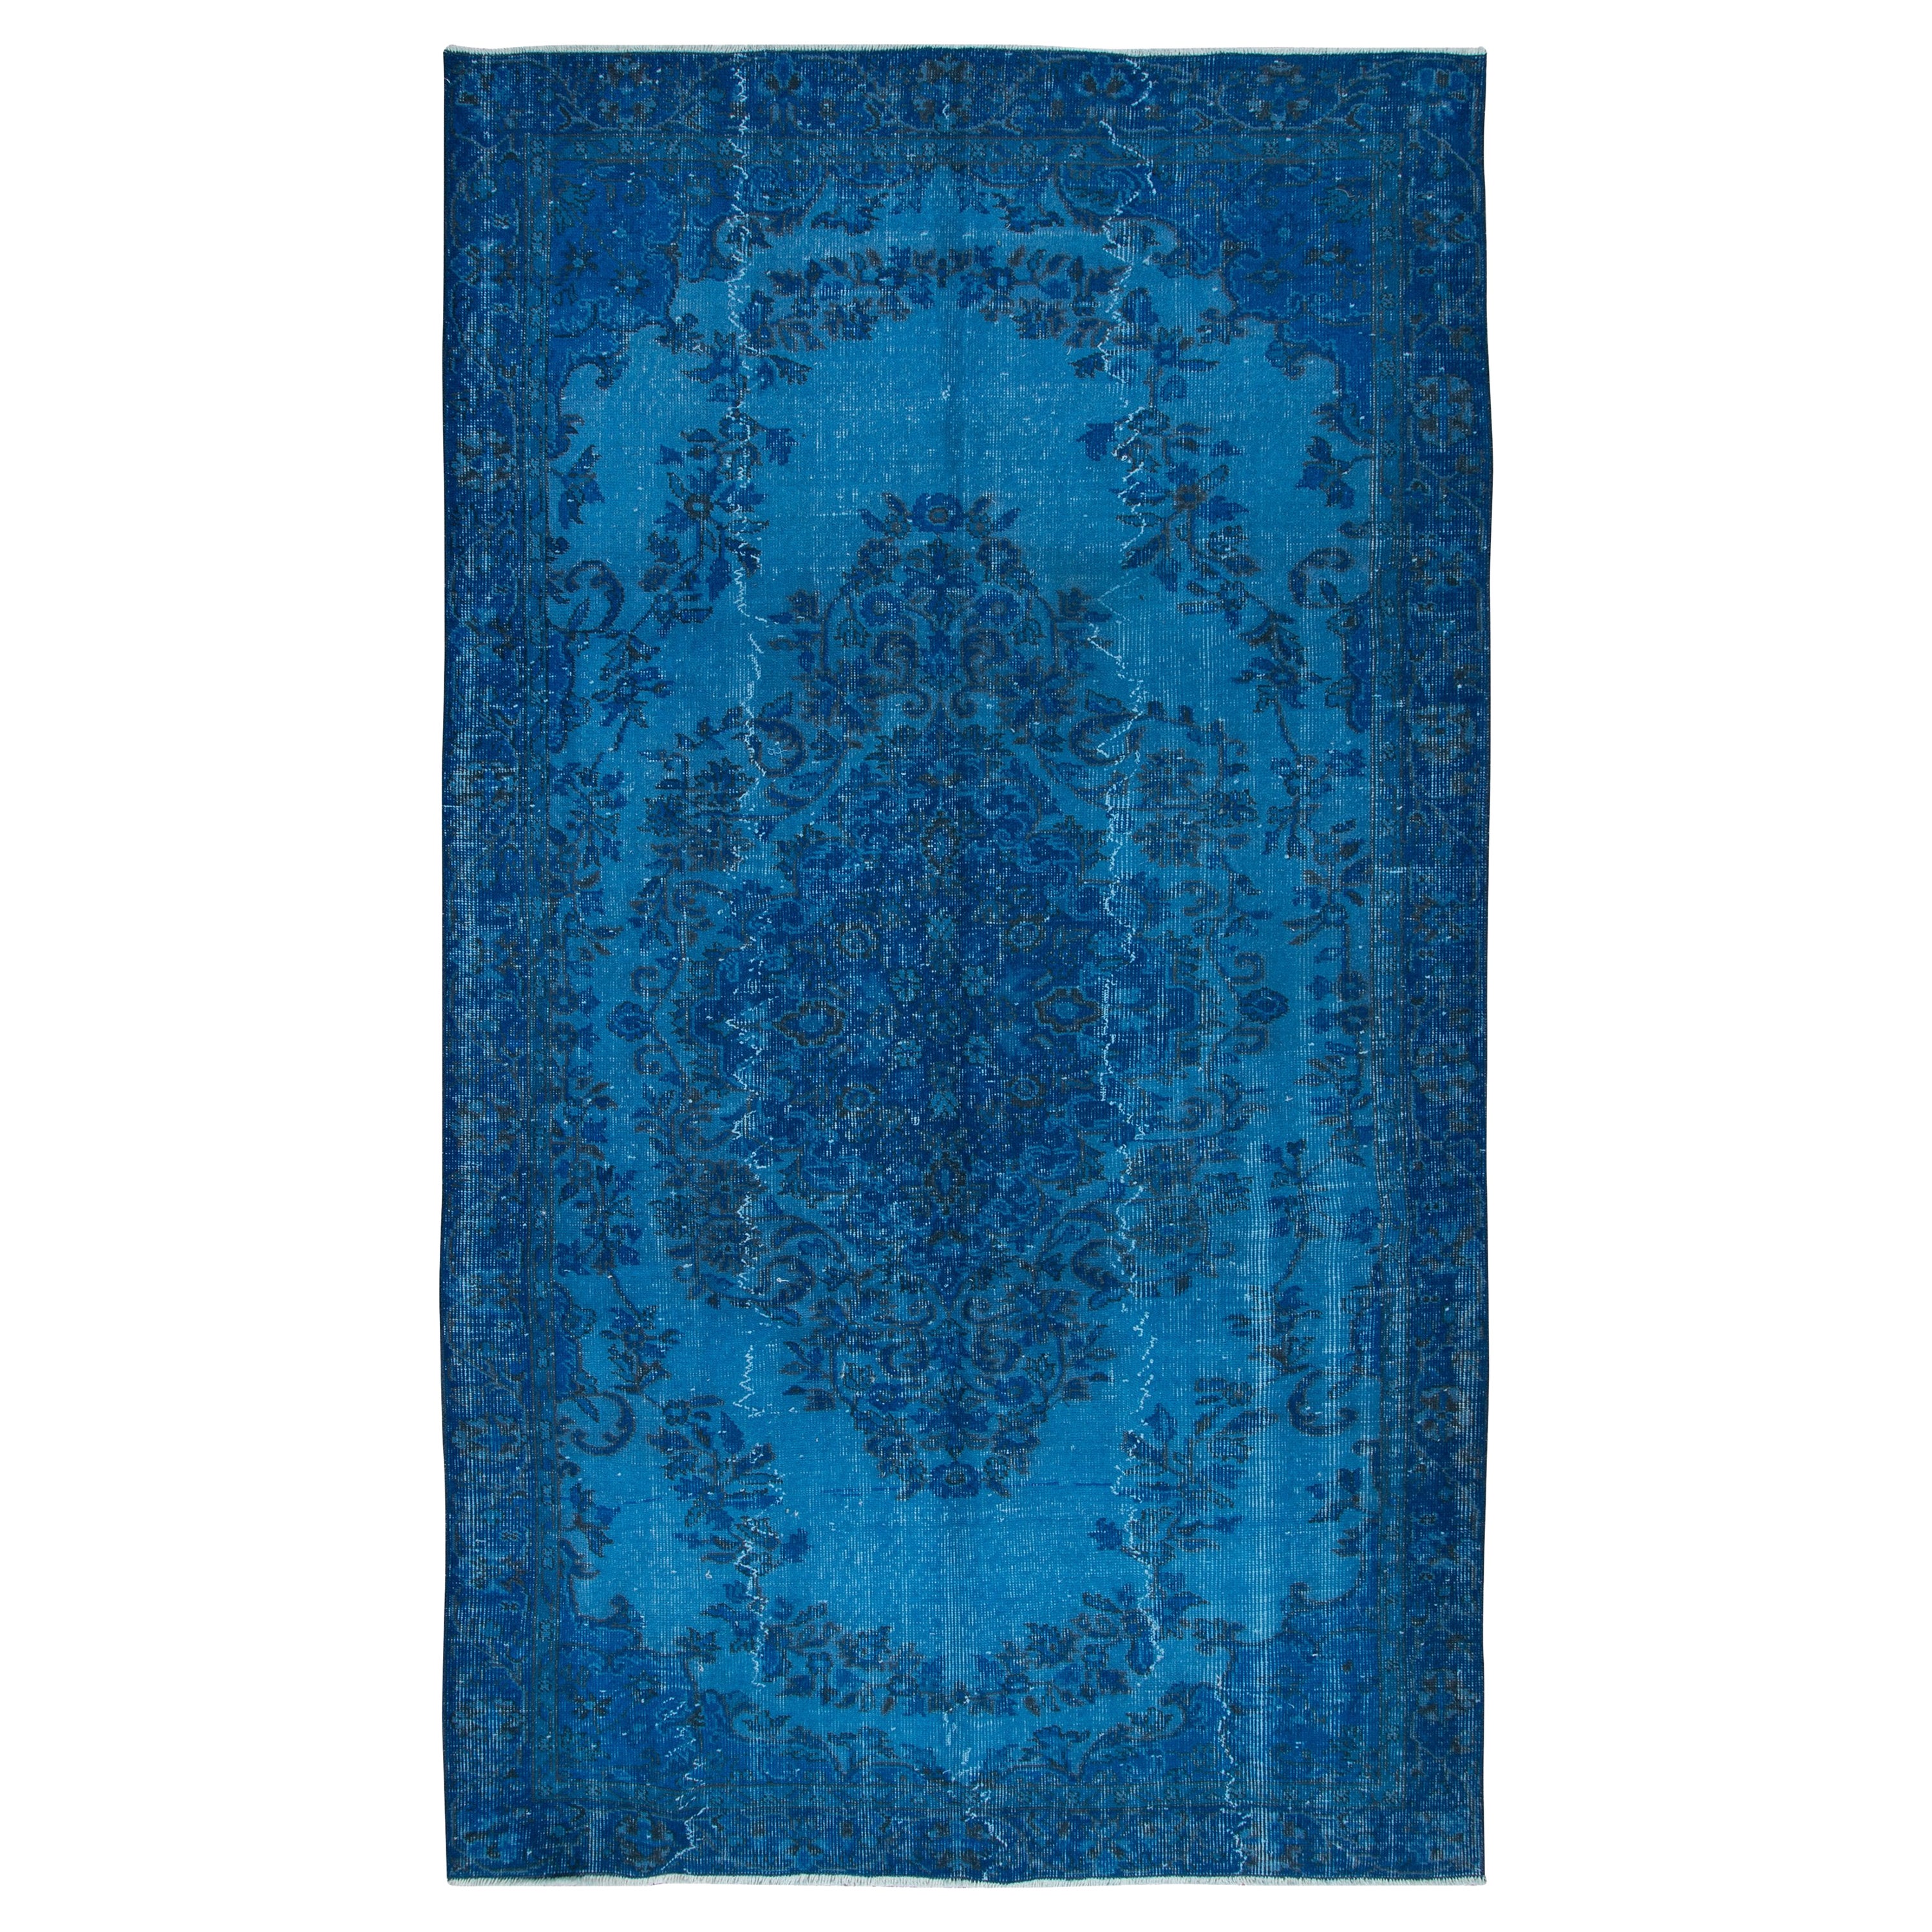 5.5x9.4 Ft Blue Home Decor Carpet, Contemporary Handmade Turkish Sparta Rug